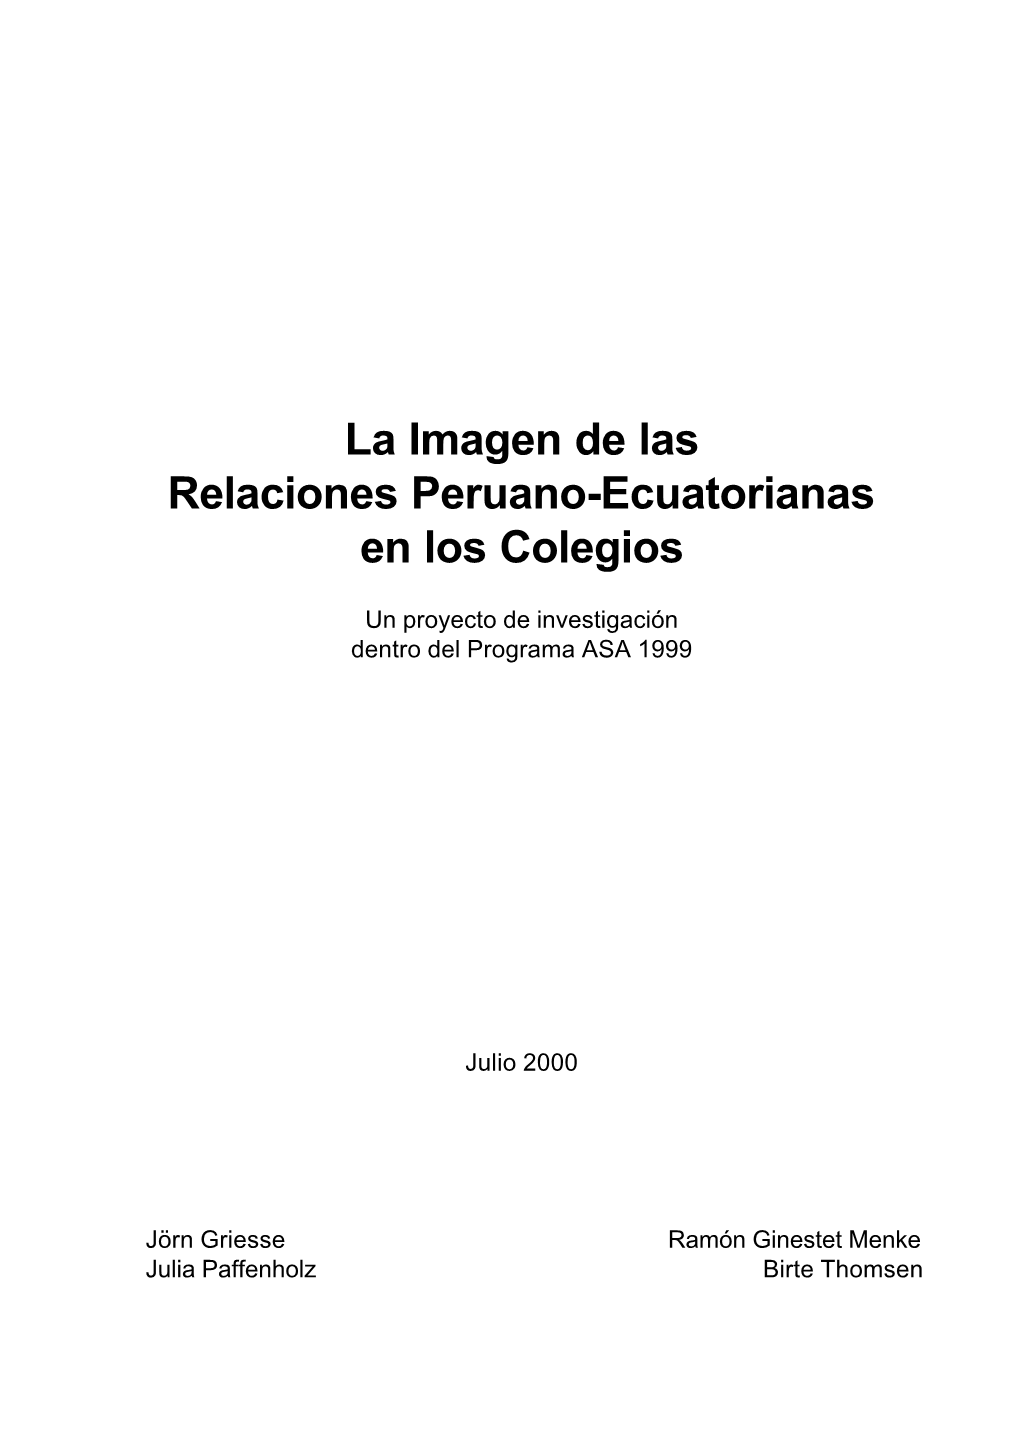 La Imagen De Las Relaciones Peruano-Ecuatorianas En Los Colegios